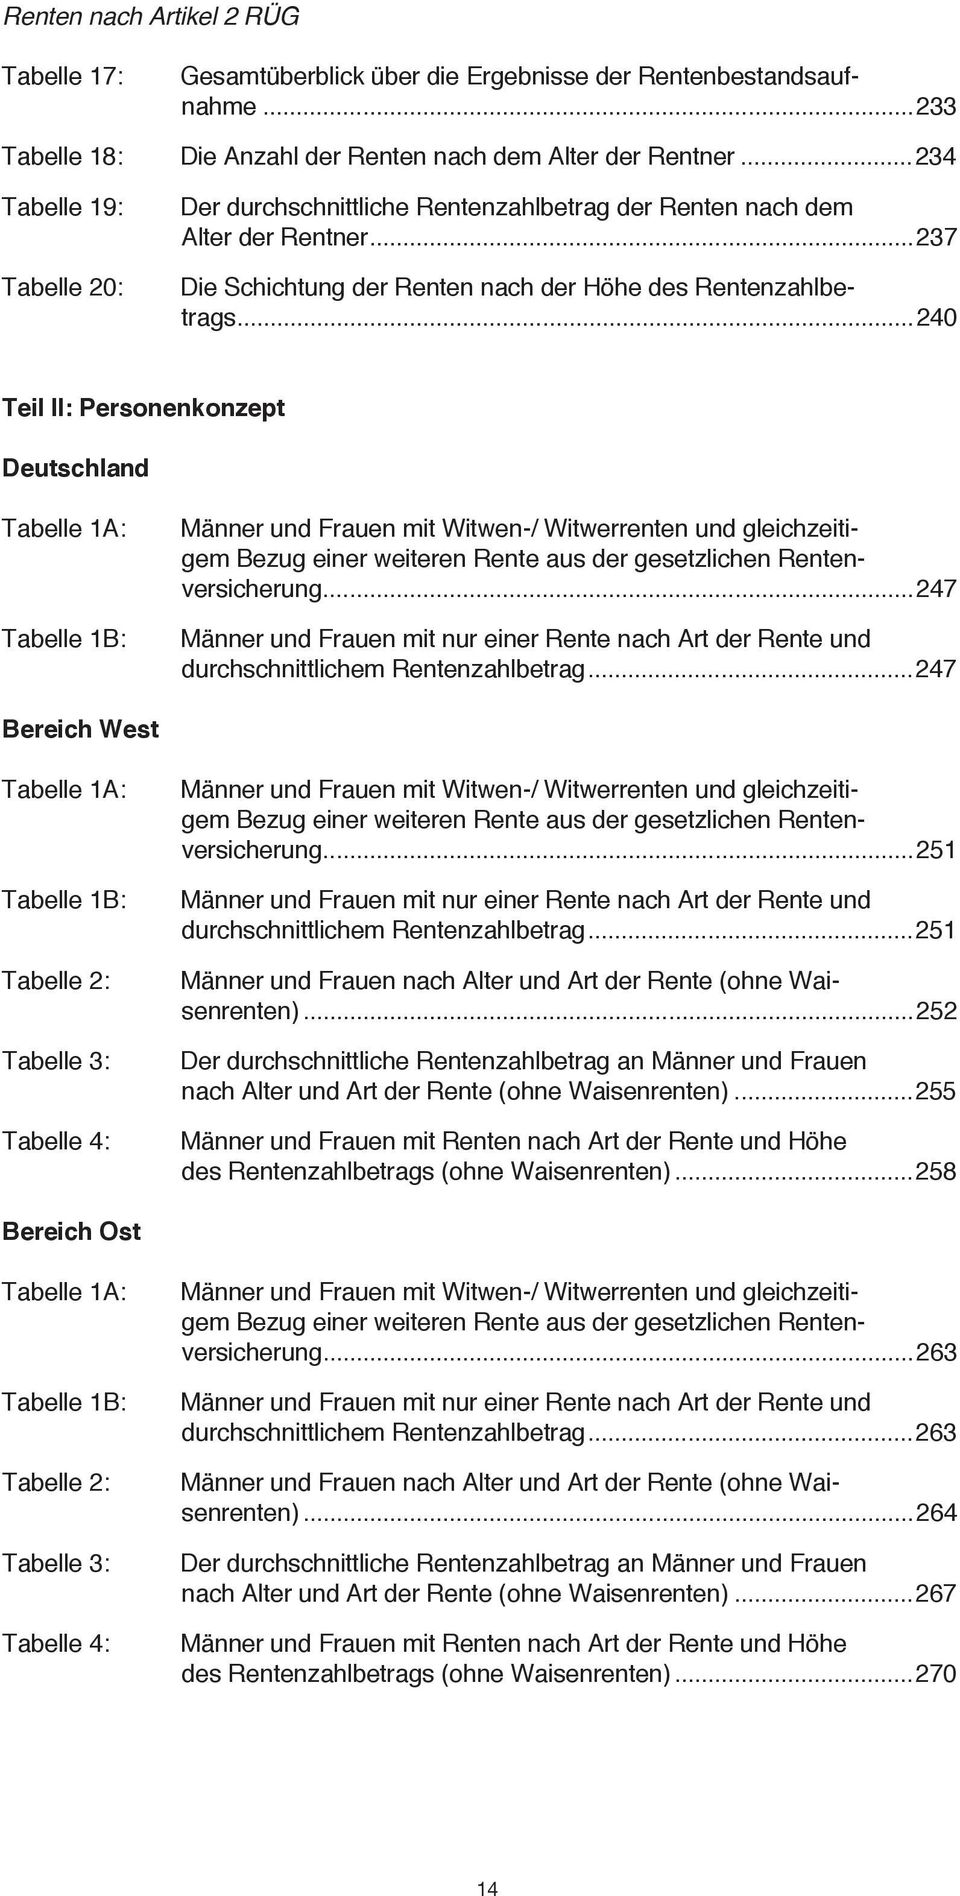 ..240 Teil II: Personenkonzept Deutschland Tabelle 1A: Tabelle 1B: Männer und mit Witwen-/ Witwerrenten und gleichzeitigem Bezug einer weiteren Rente aus der gesetzlichen.